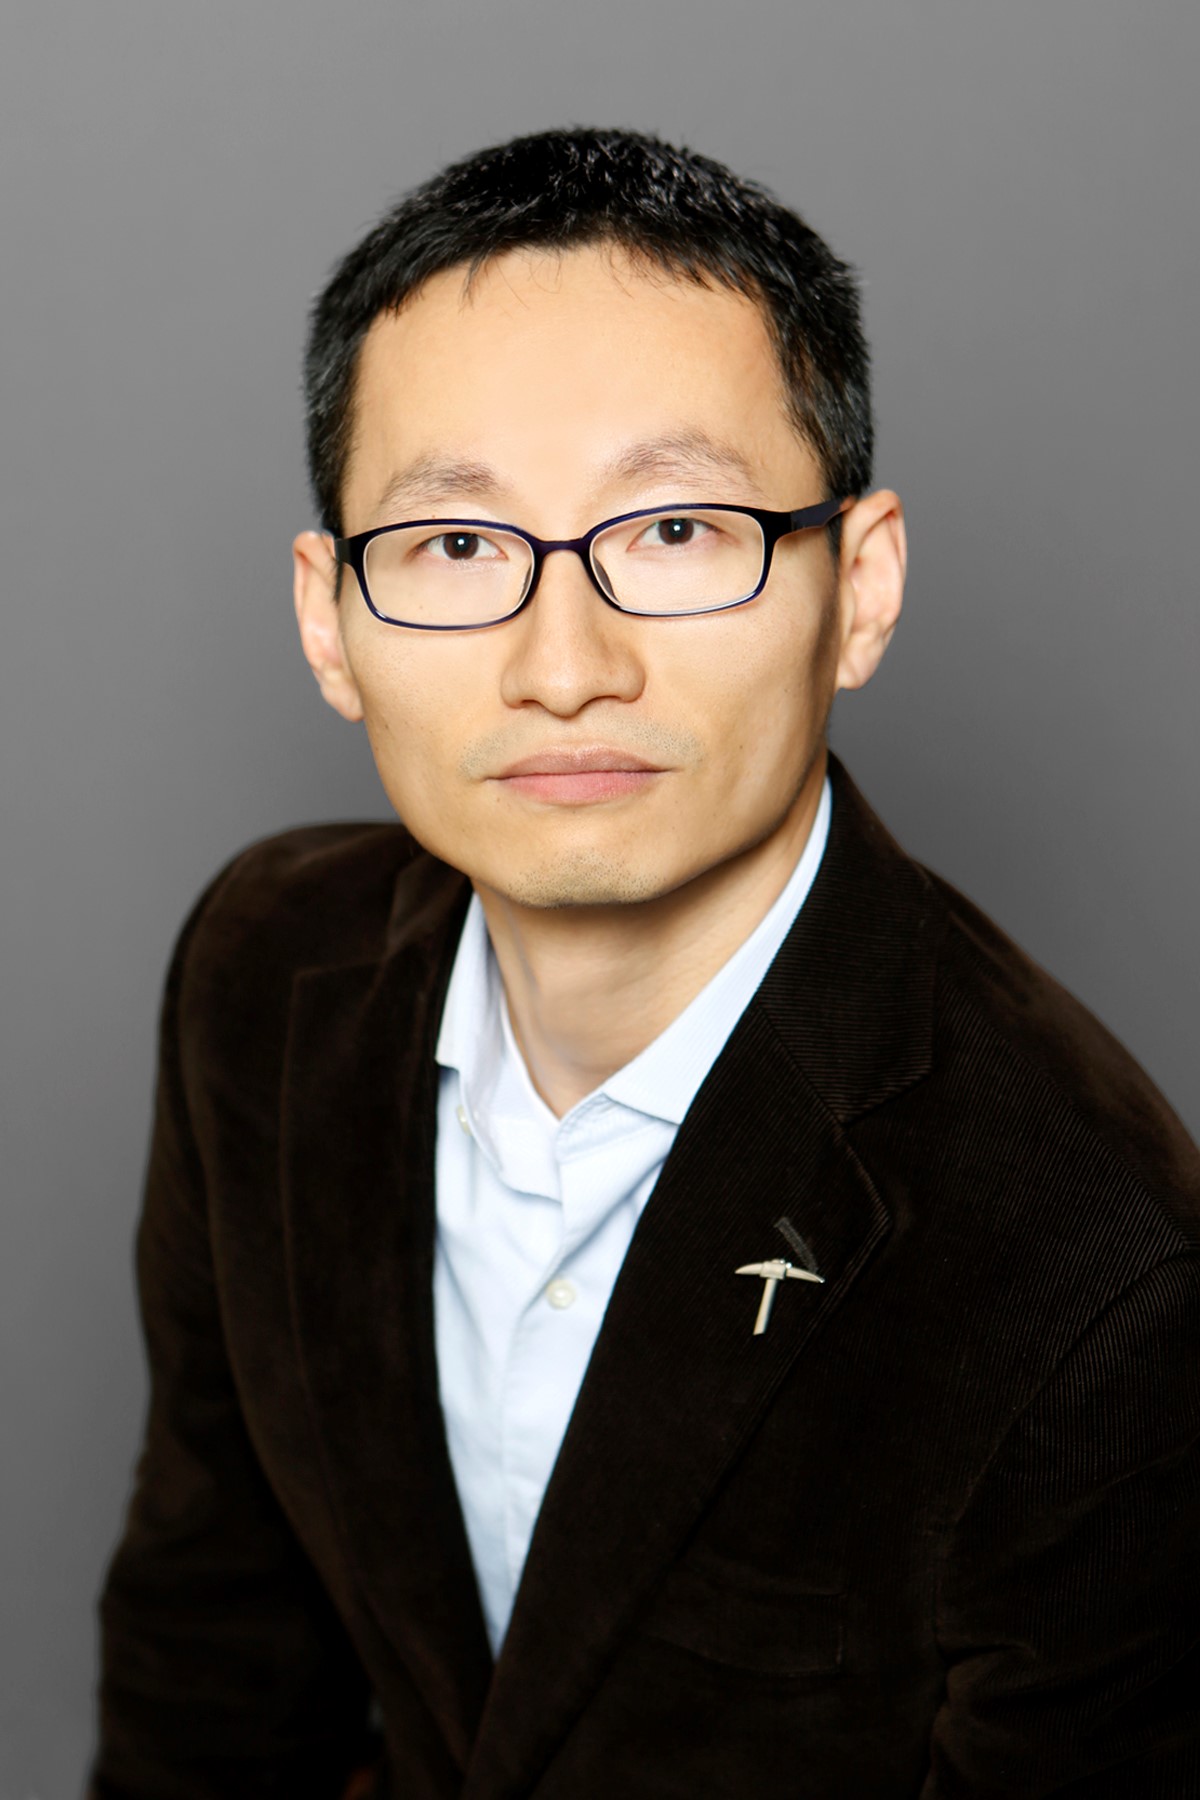 Yirong Lin, Ph.D.